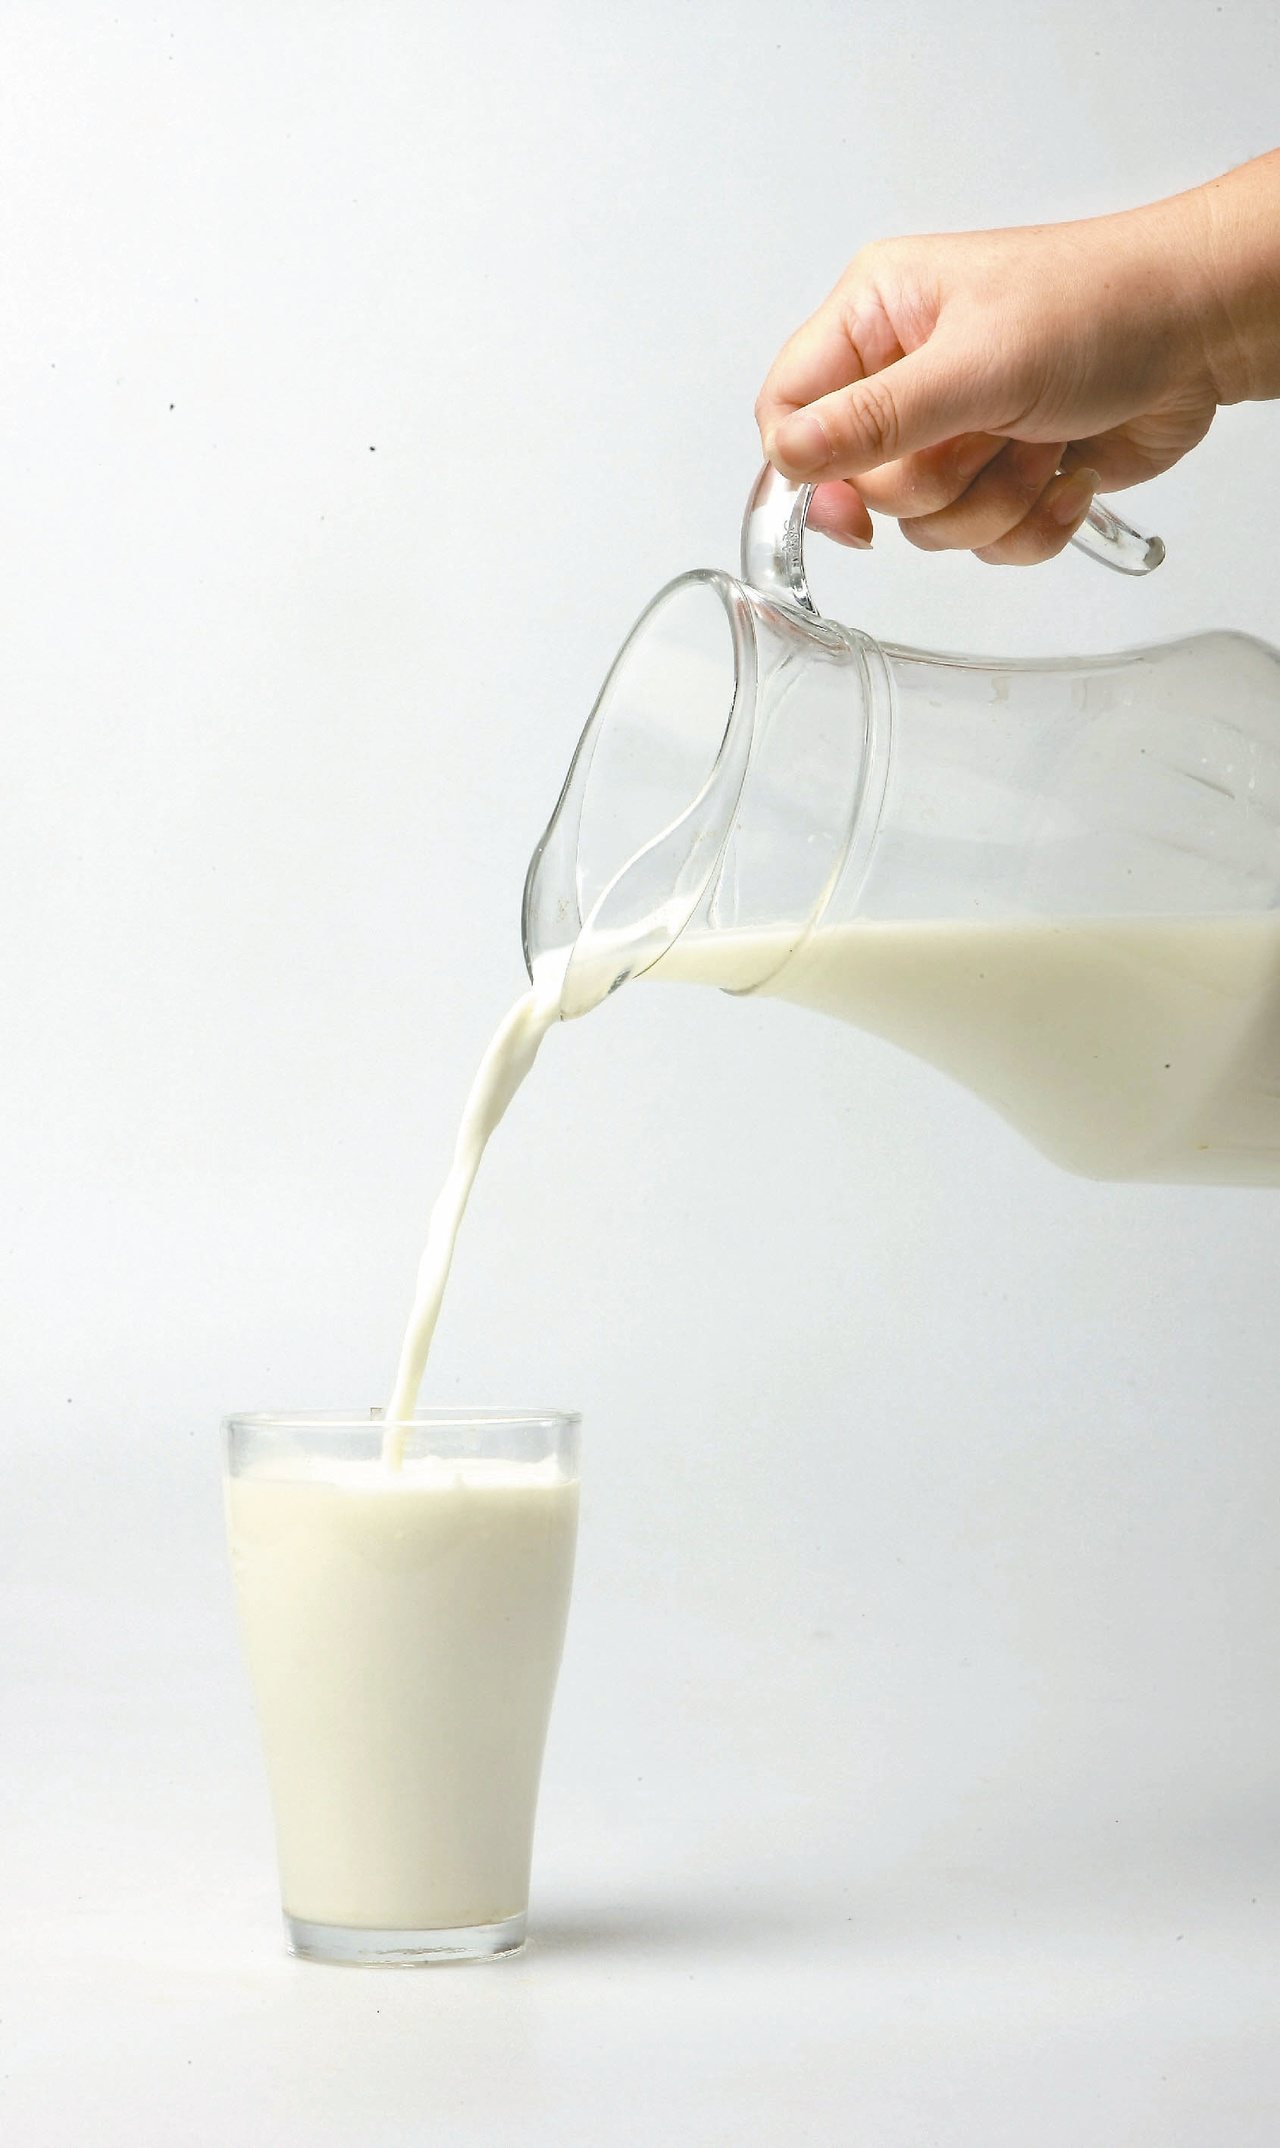 乳糖不耐症可能是台灣民眾少喝乳品原因；營養師建議，乳糖不耐者可先攝取少量乳品、優酪乳及優格，再慢慢增量，有助改善腹瀉、脹氣症狀。